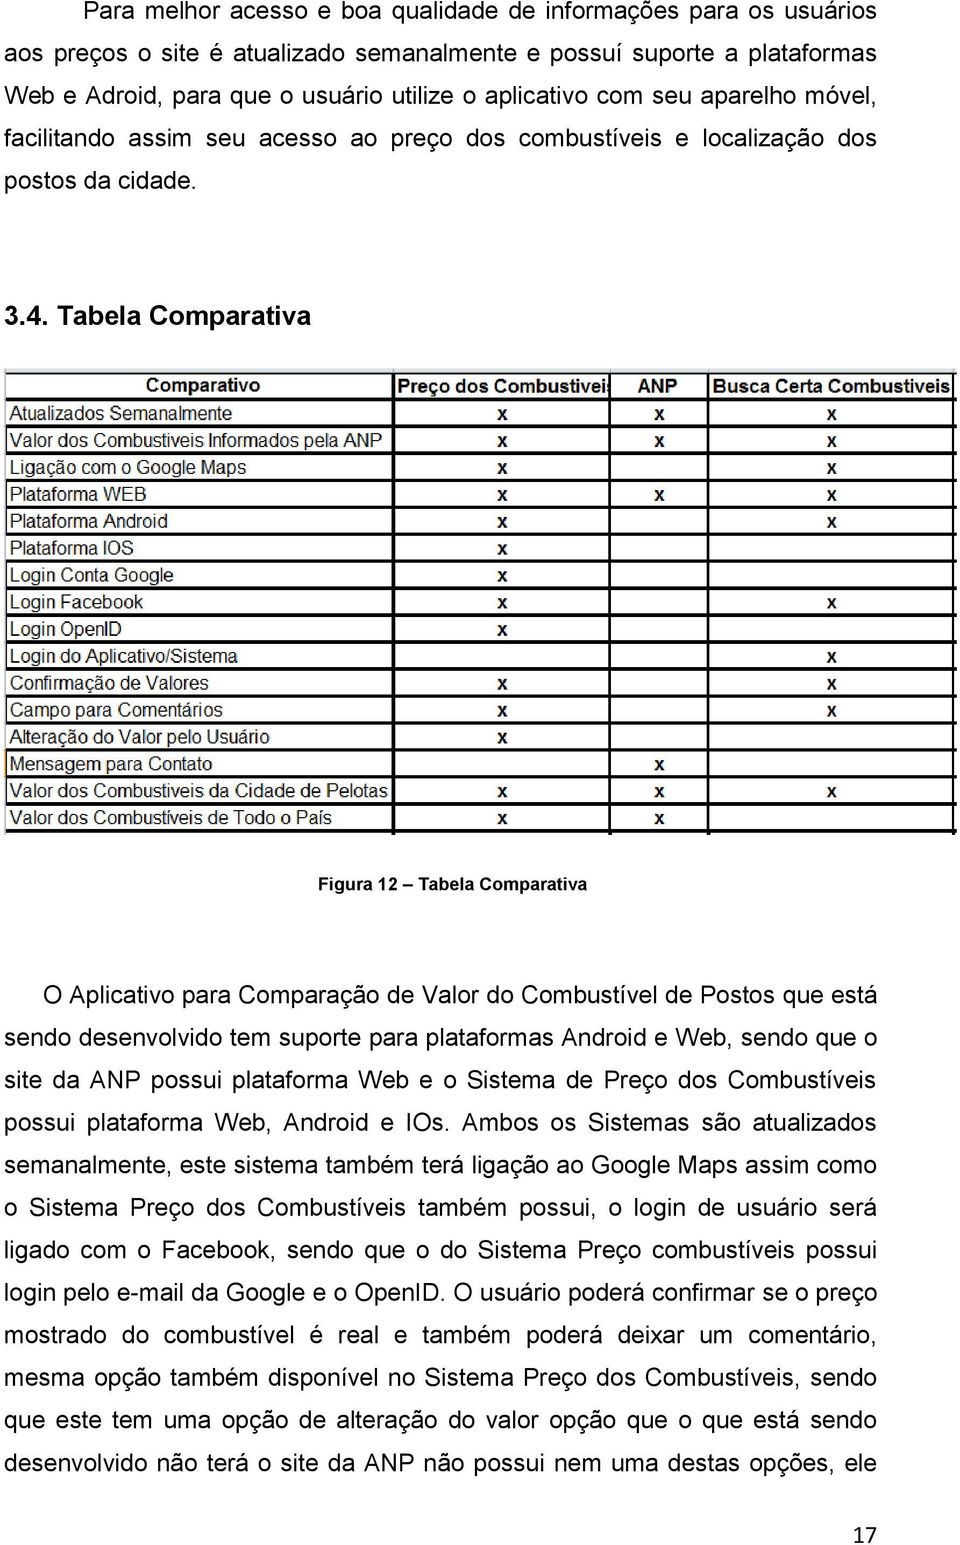 Tabela Comparativa Figura 12 Tabela Comparativa O Aplicativo para Comparação de Valor do Combustível de Postos que está sendo desenvolvido tem suporte para plataformas Android e Web, sendo que o site